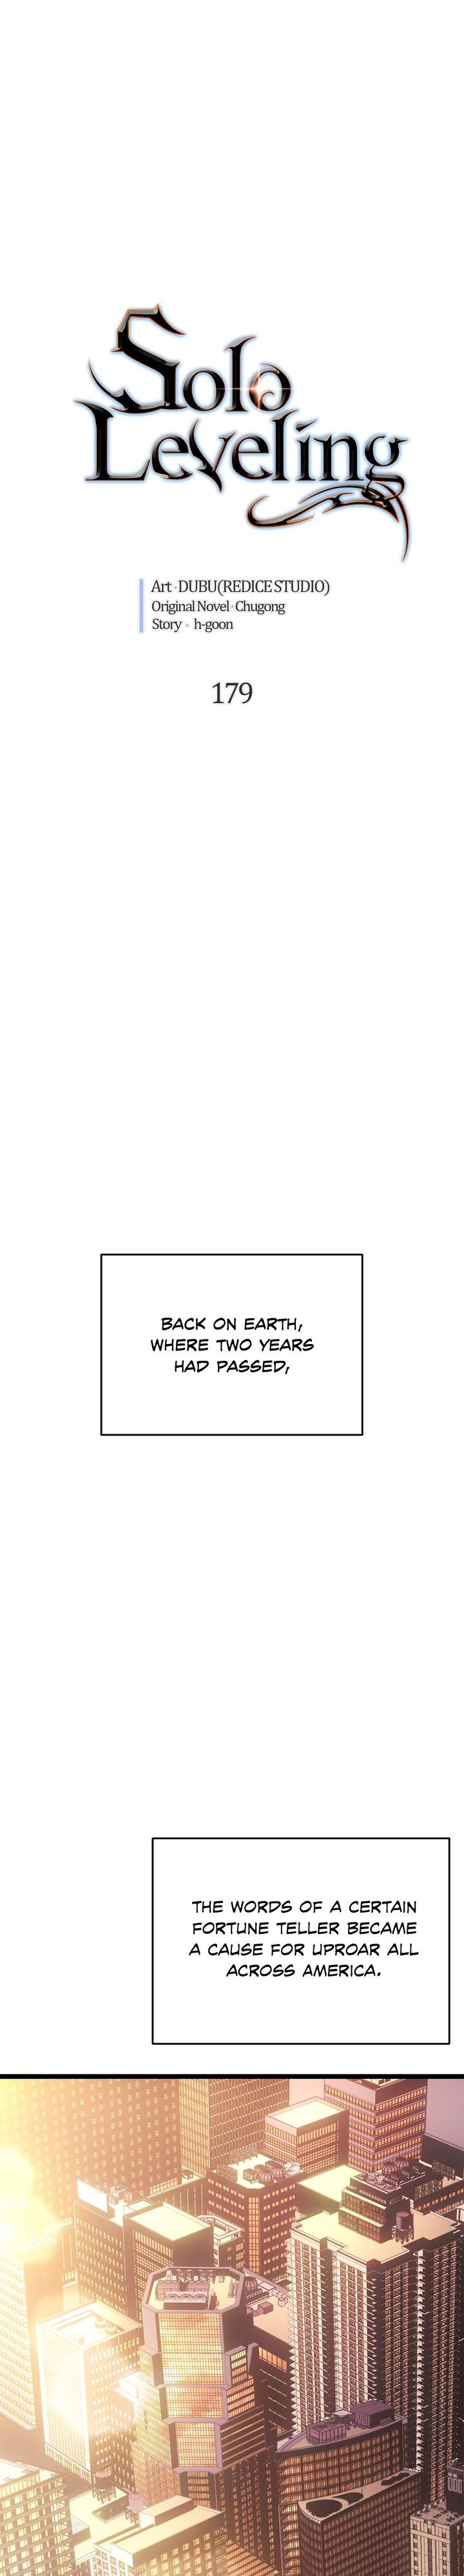 Solo Leveling Manga Manga Chapter - 179 - image 1